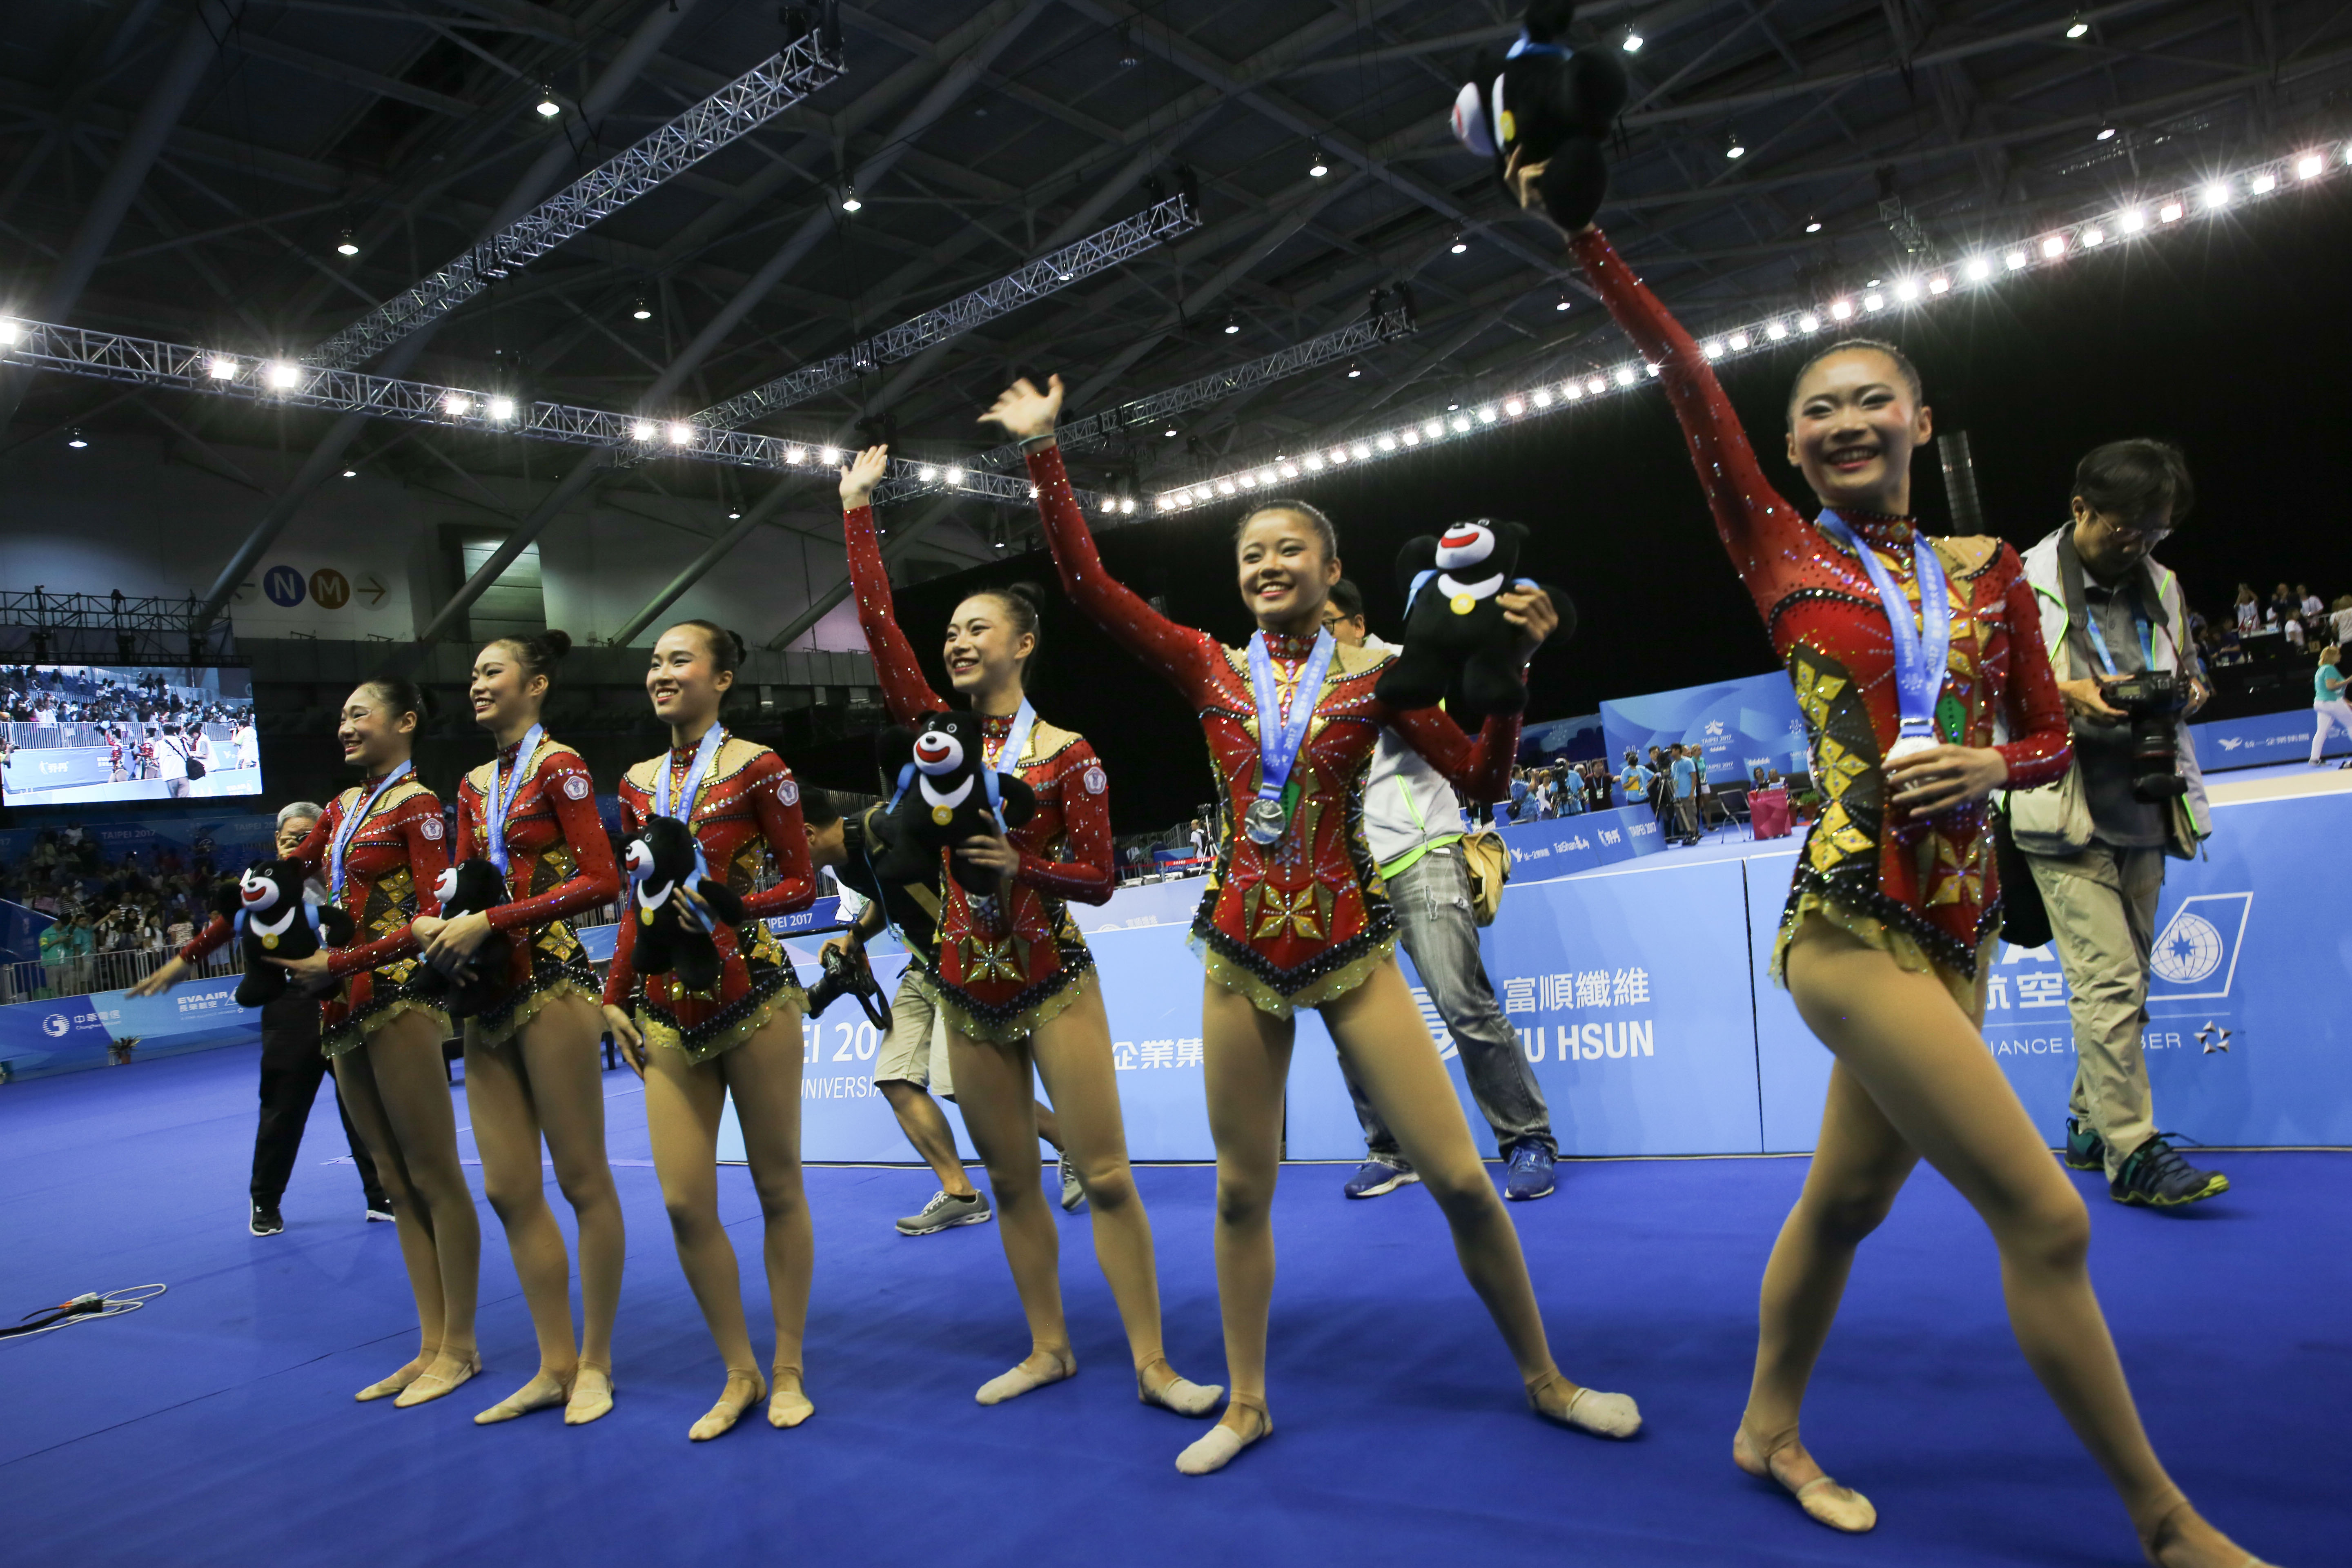 世大運韻律體操項目奪得銀牌。